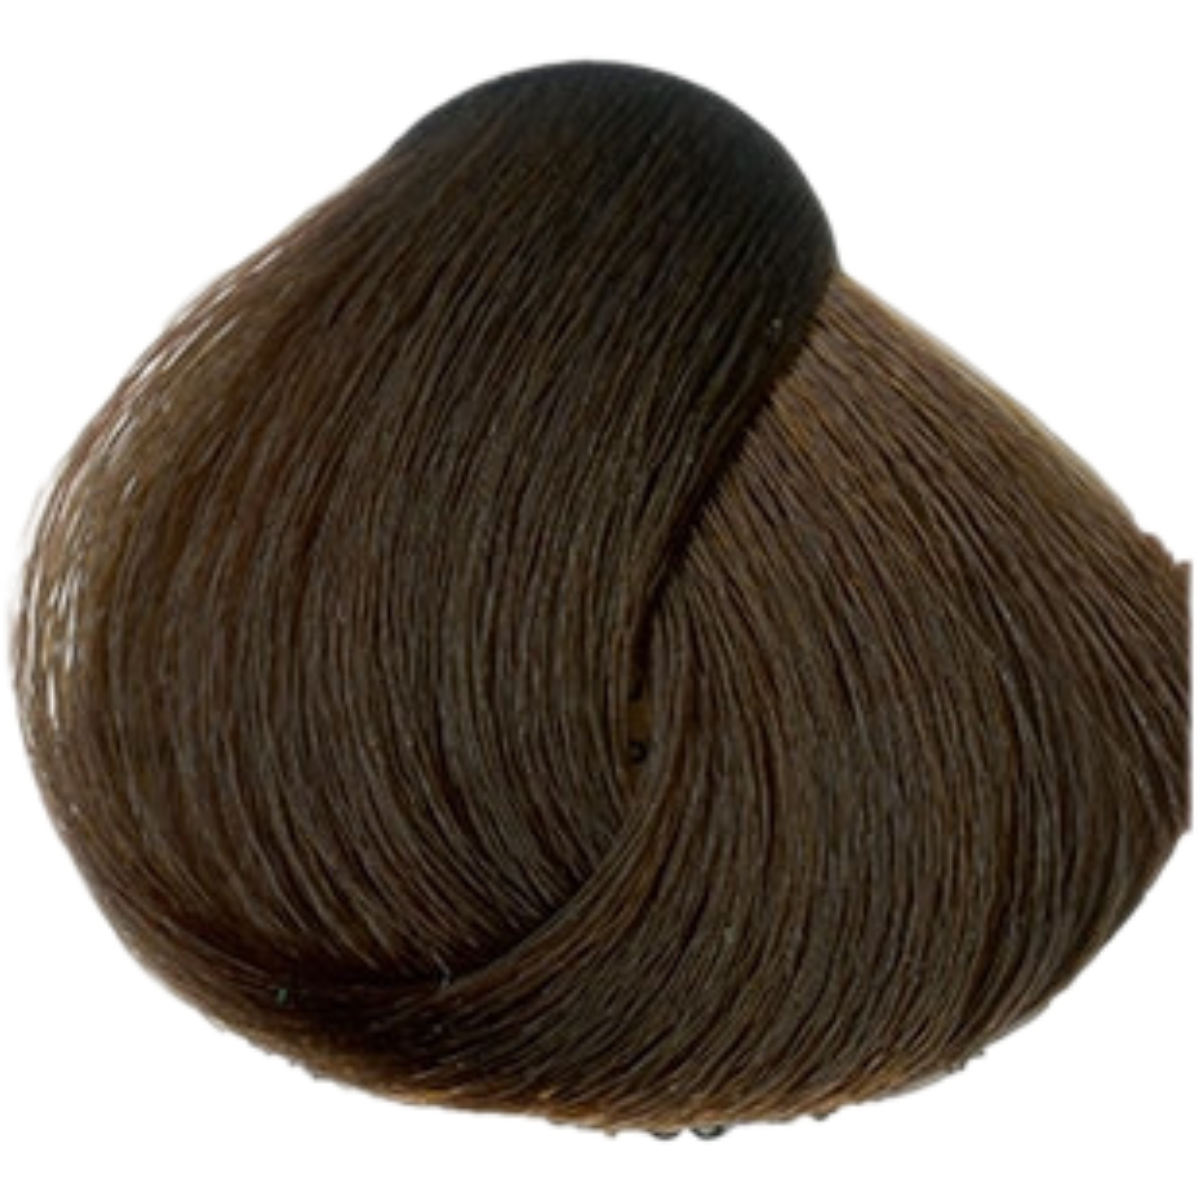 צבע שיער 6.45 DARK COPPER MAHOGANY BLONDE פארמויטה FarmaVita צבע לשיער 60 גרם